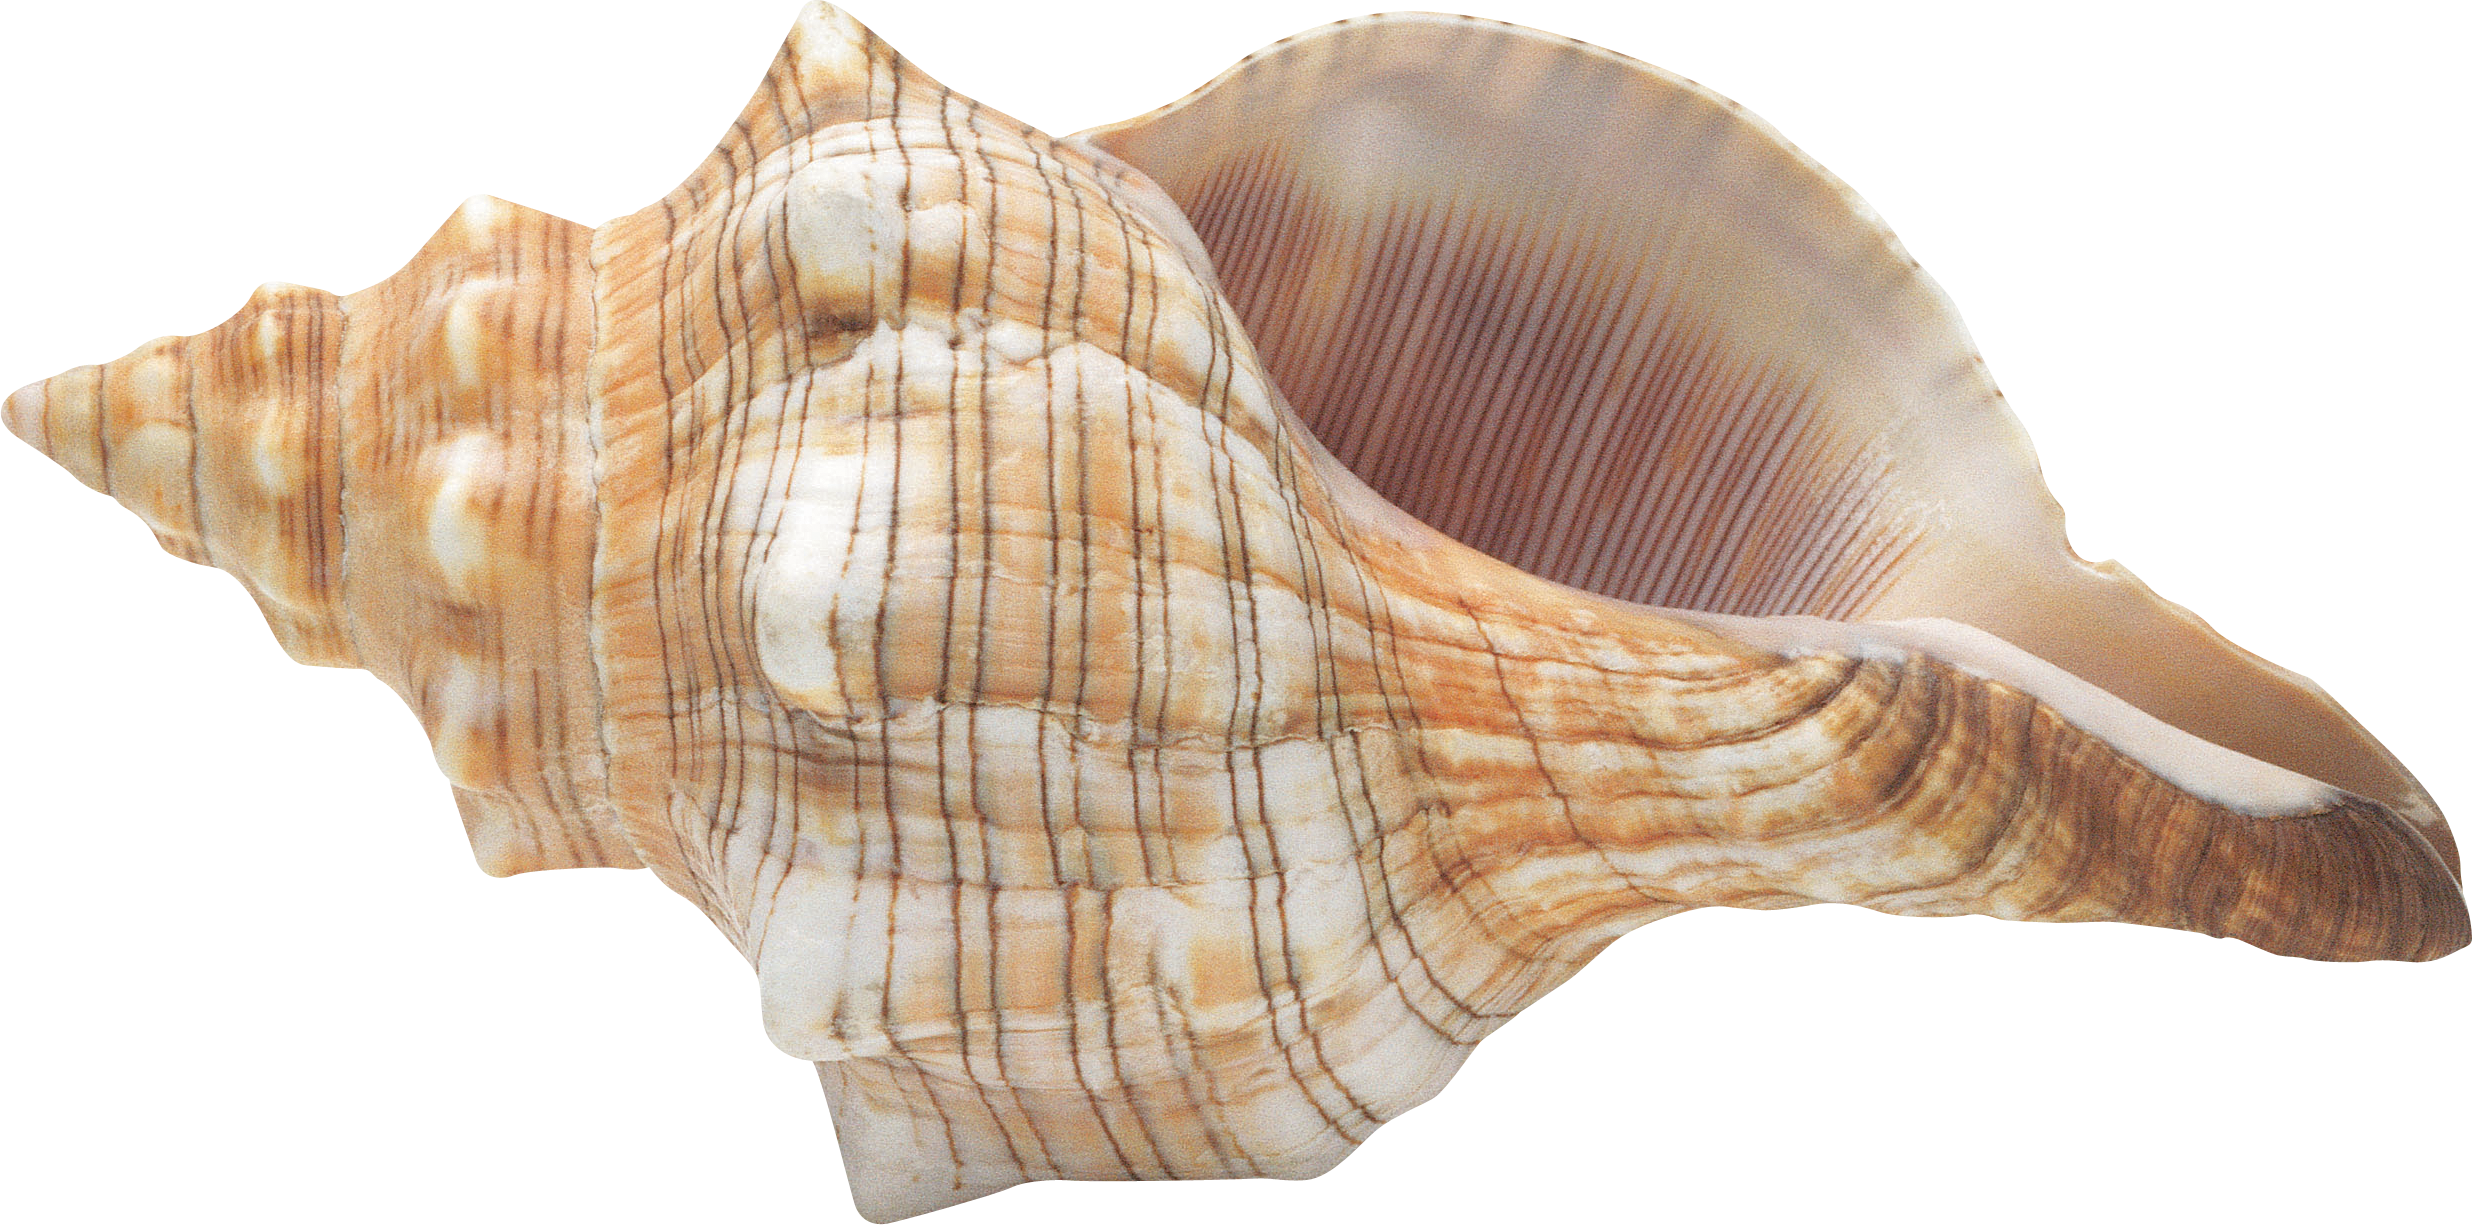 Fundo da imagem do conch do seashell